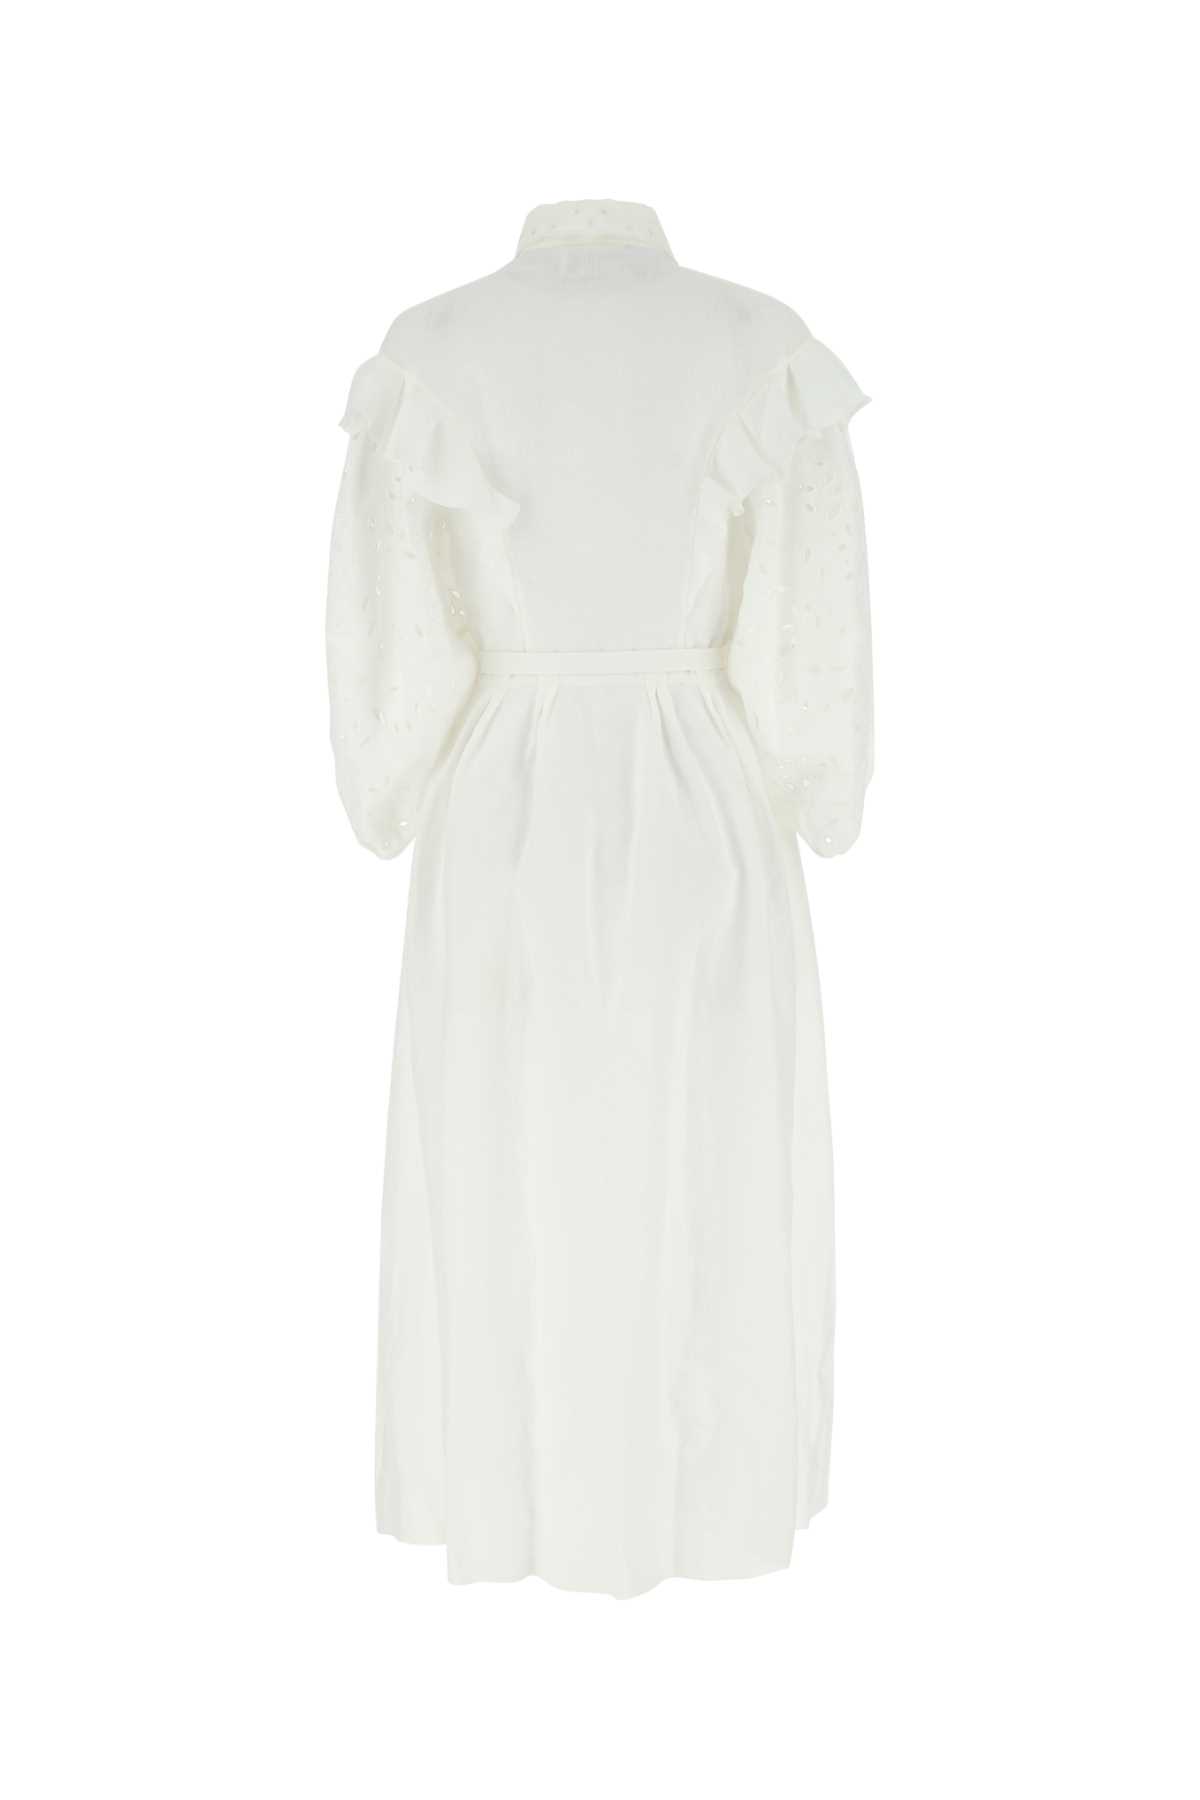 Chloé White Linen Dress In 107